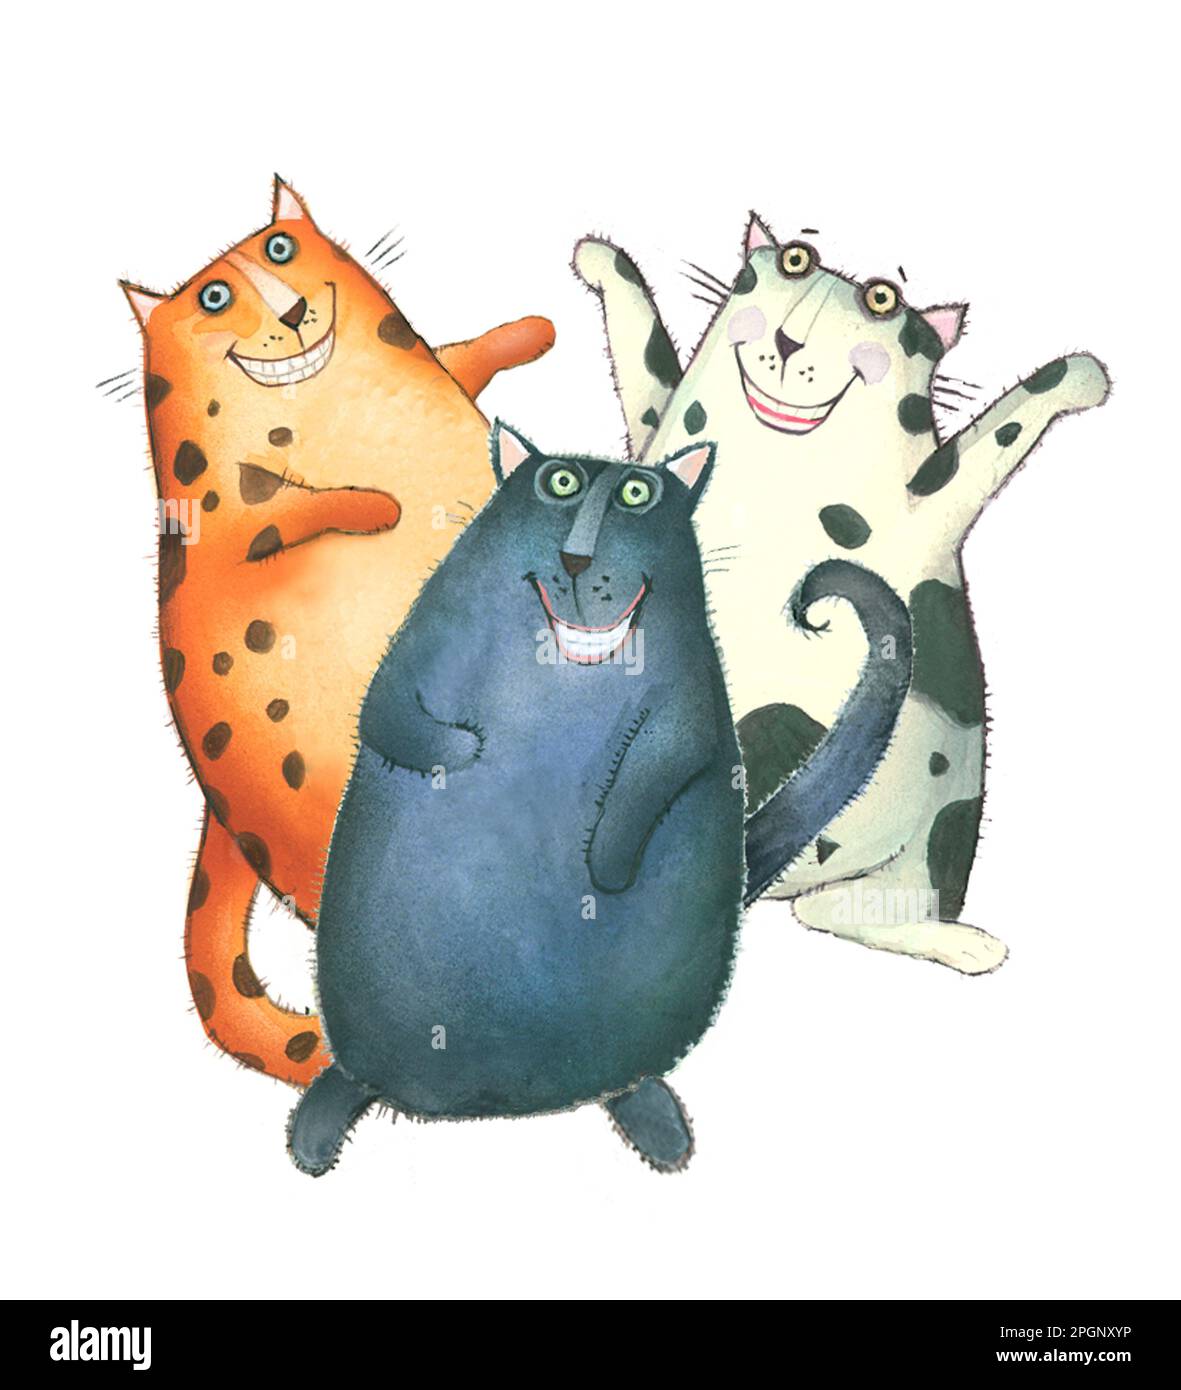 Animals-happy comic cats Stock Photo